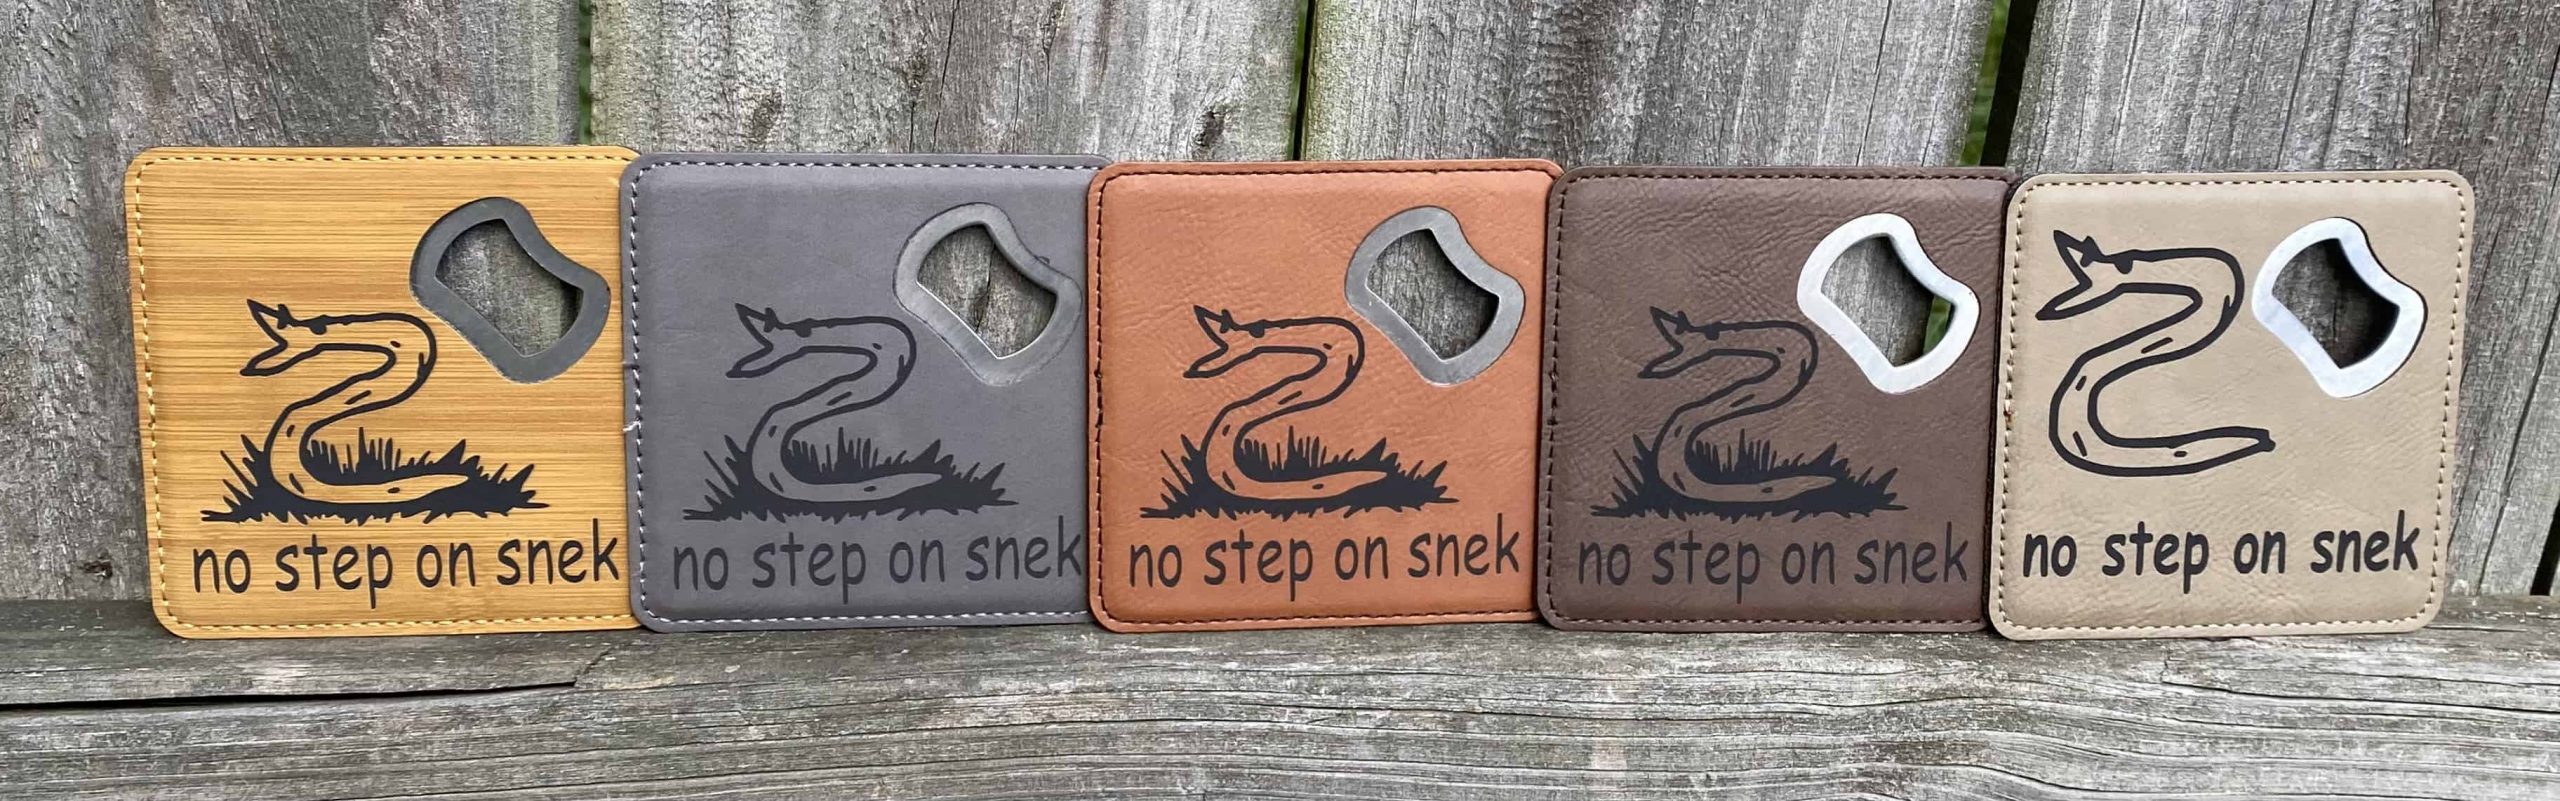 No Step On Snek Leather Coaster Set Copy scaled